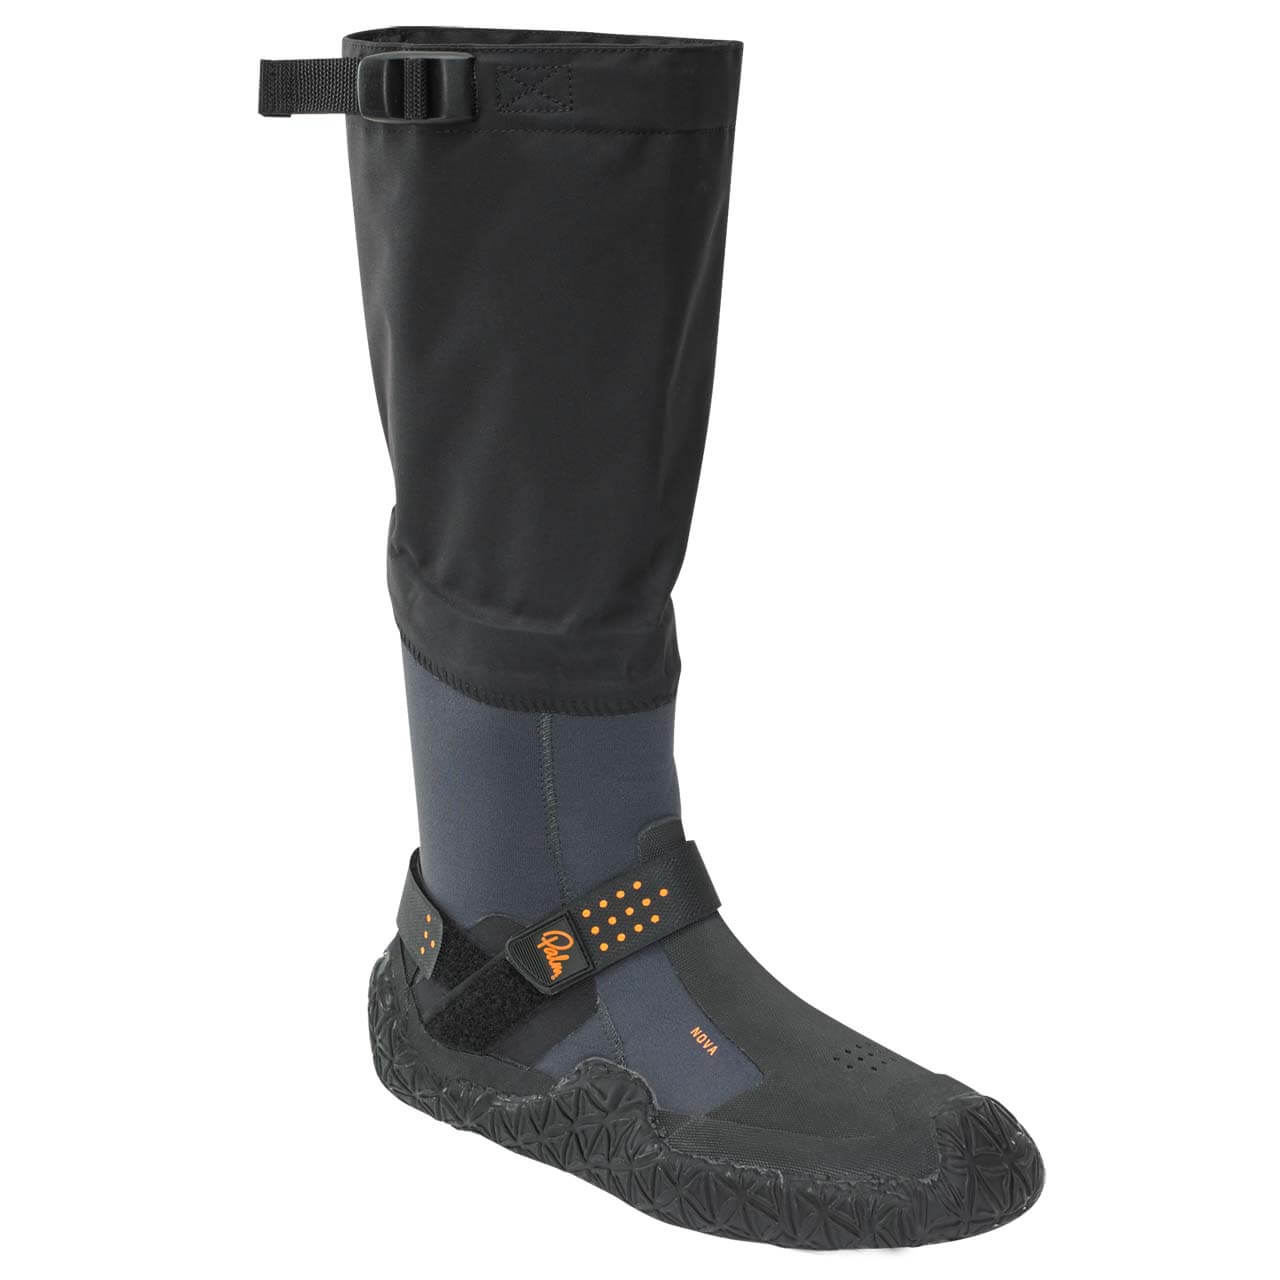 Palm Nova Boots - Jet Grey, UK 11